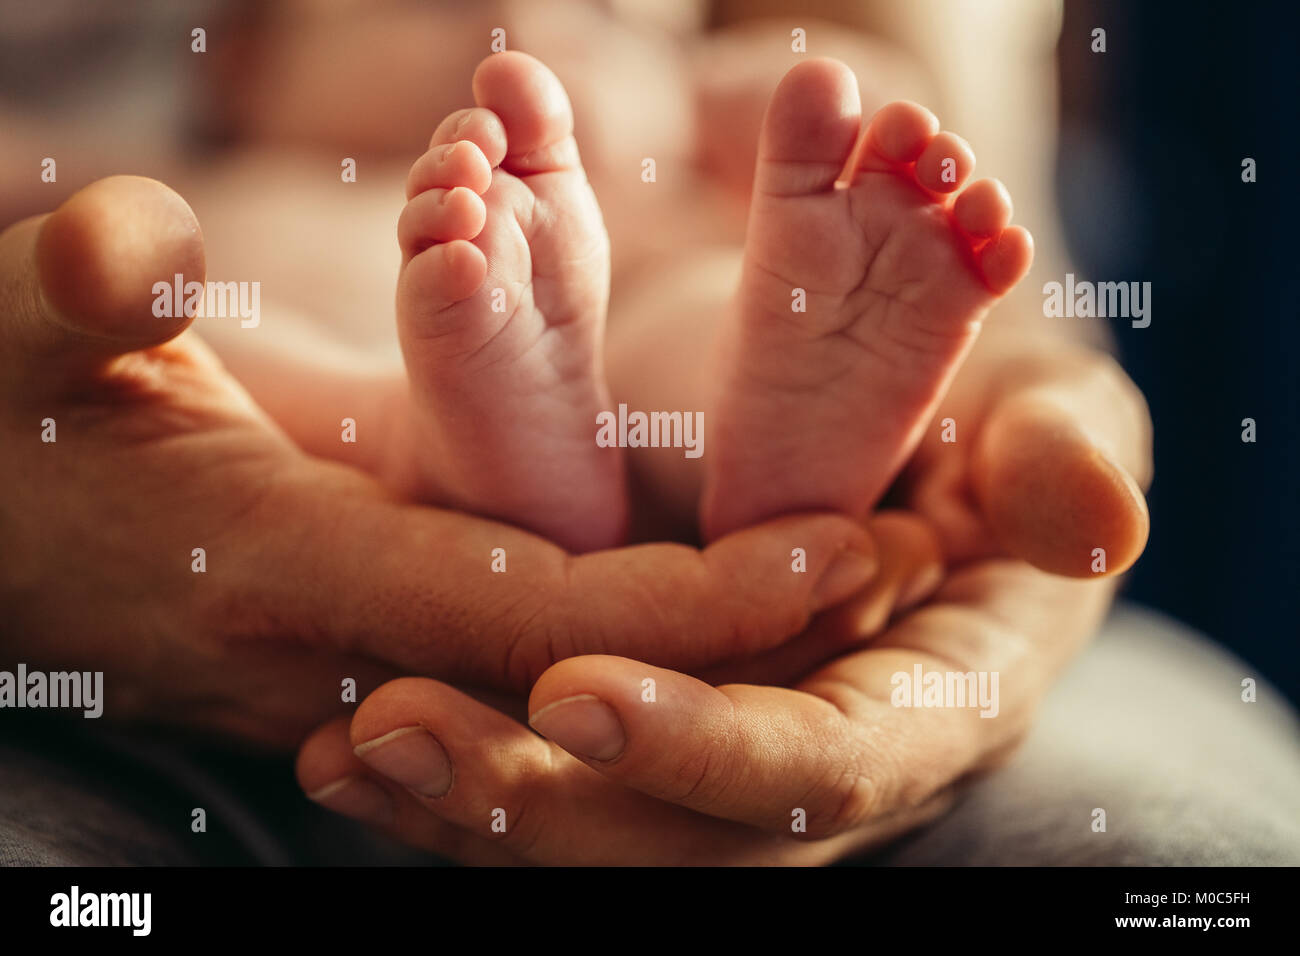 Las piernas del bebé recién nacido en madres adorable mano con foco suave de babie's Foot Foto de stock